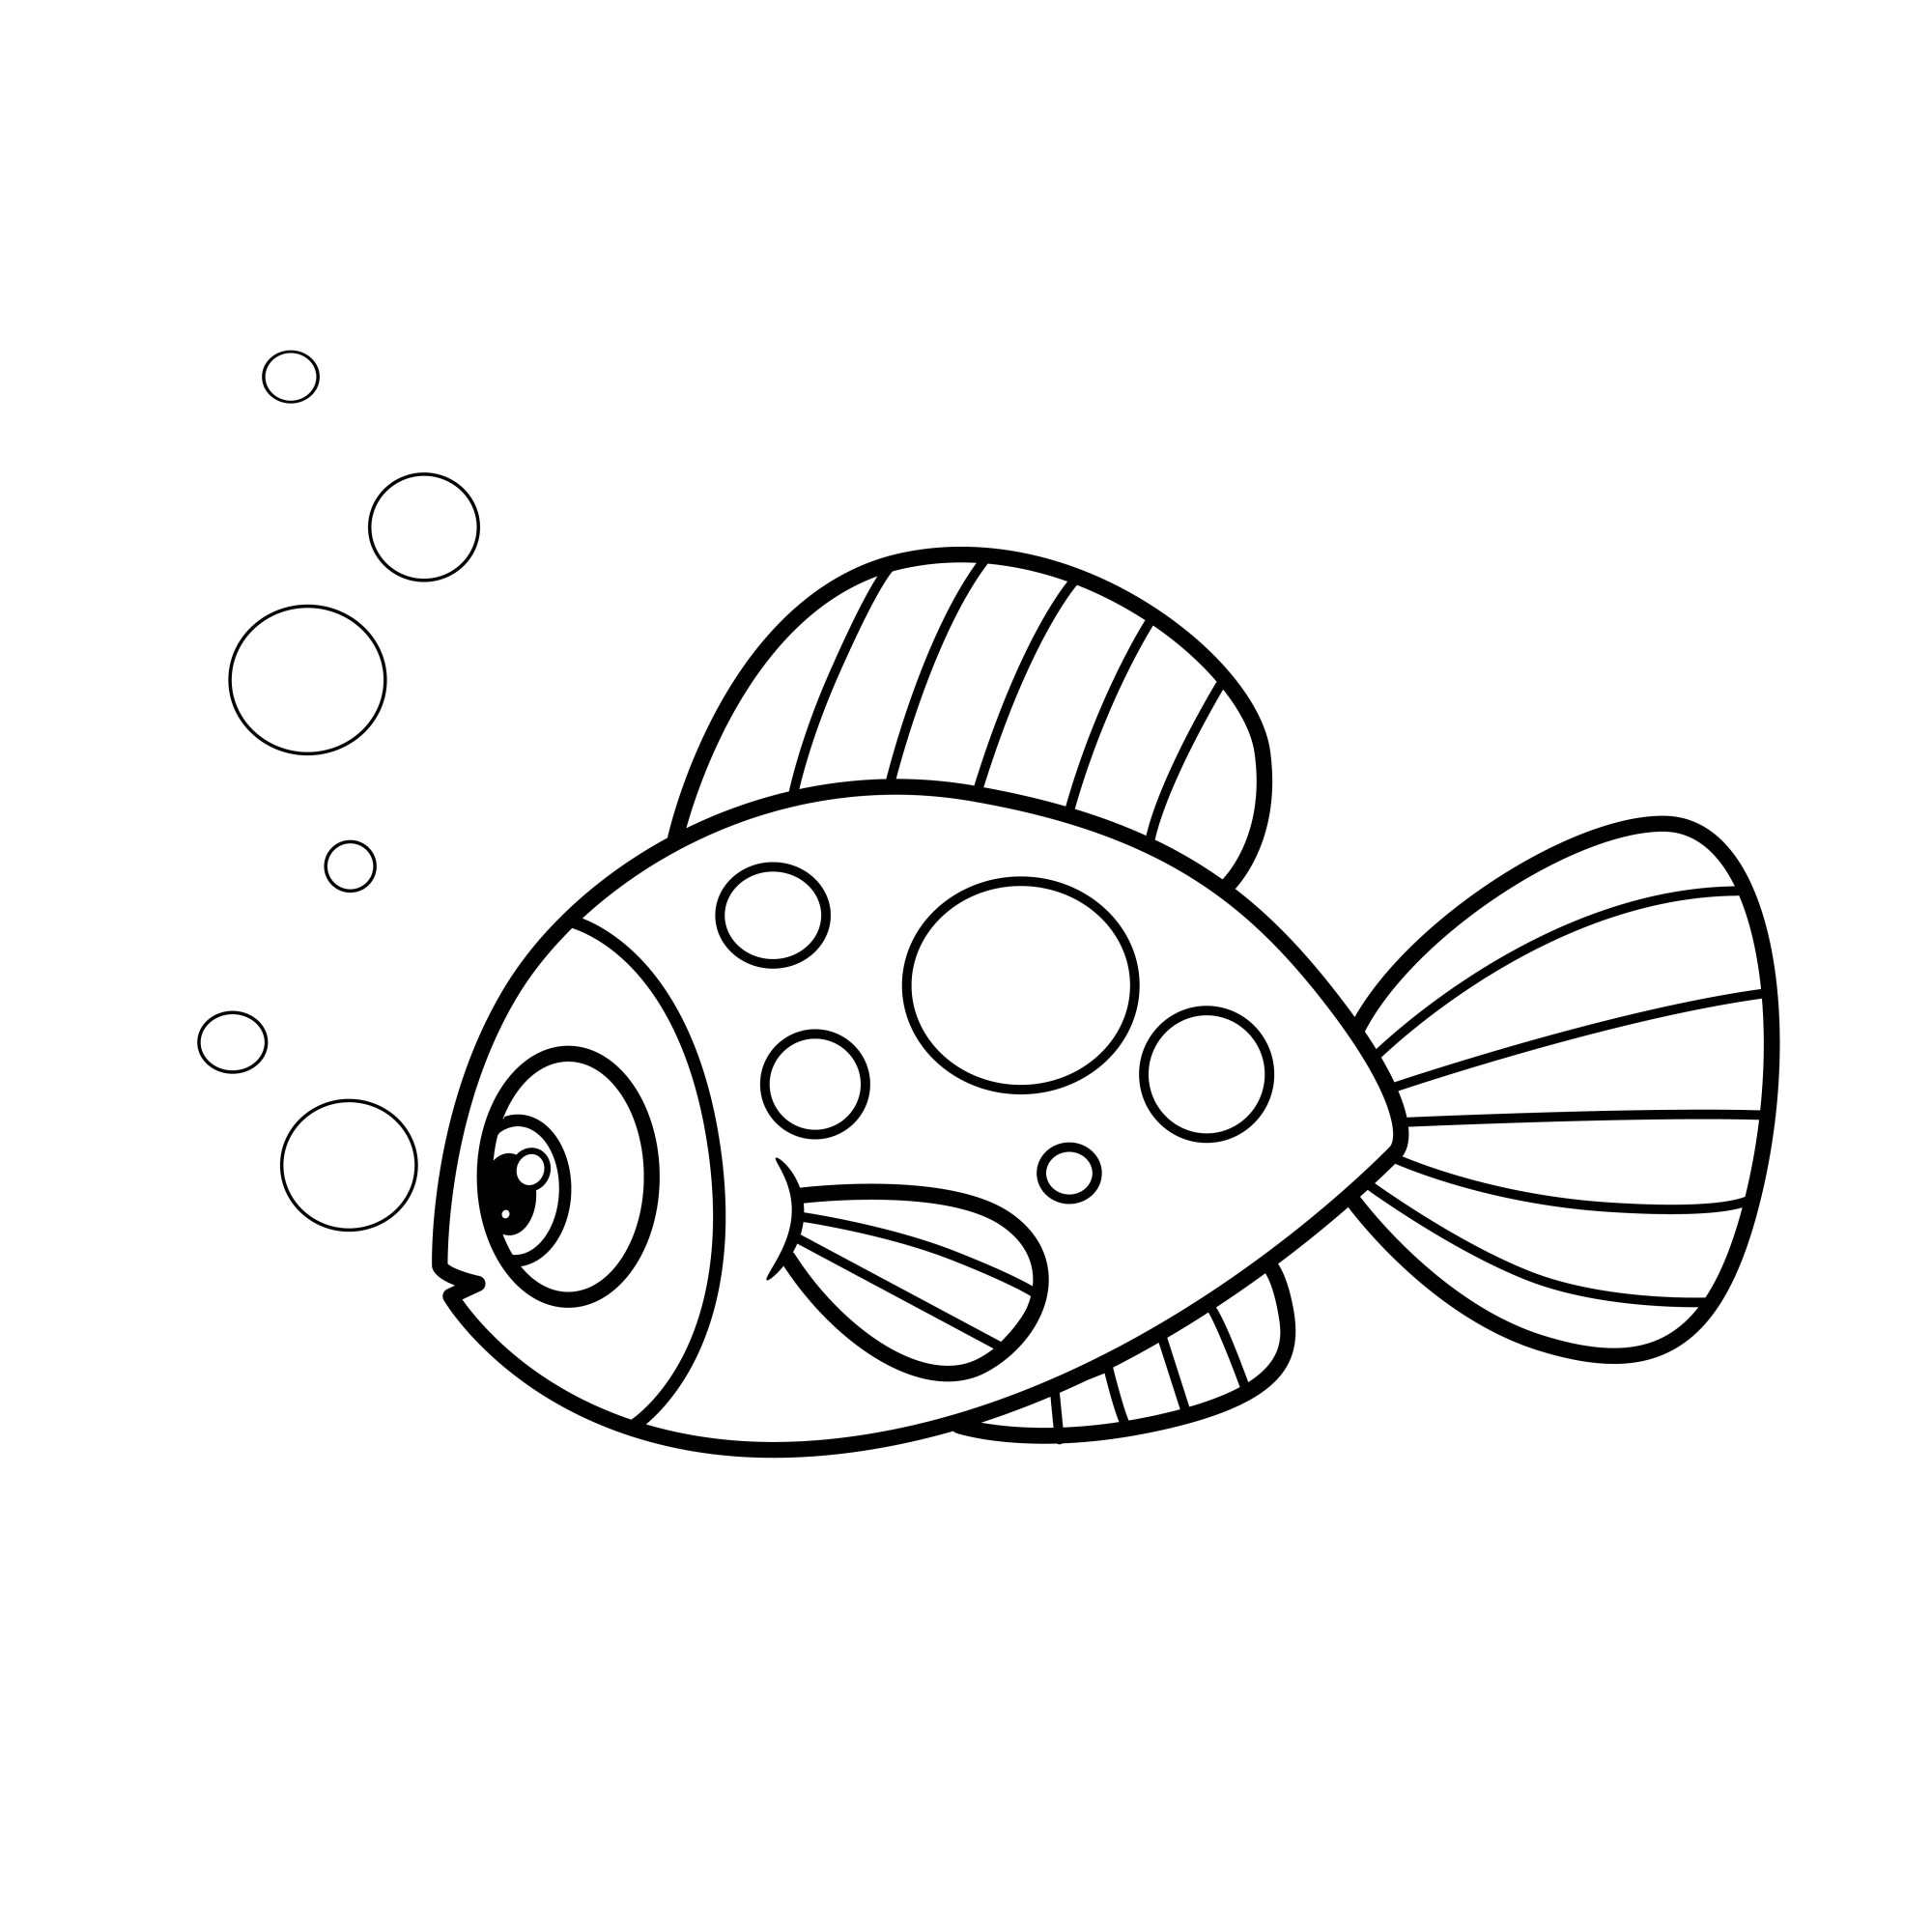 Раскраска для детей: мультяшная морская рыба с пузырьками воздуха